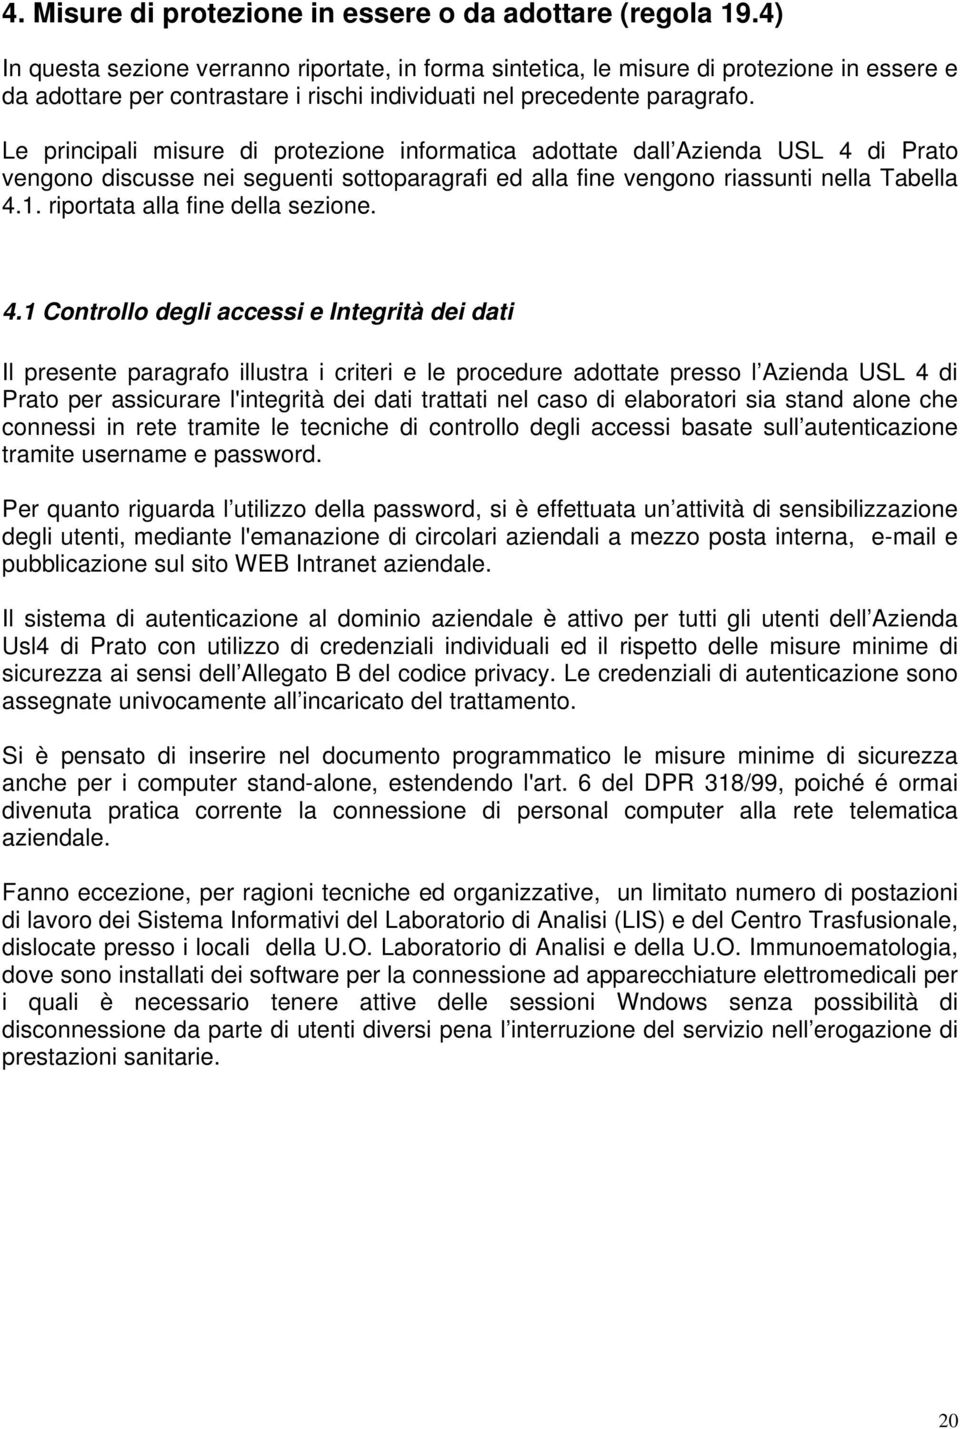 Le principali misure di protezione informatica adottate dall Azienda USL 4 di Prato vengono discusse nei seguenti sottoparagrafi ed alla fine vengono riassunti nella Tabella 4.1.